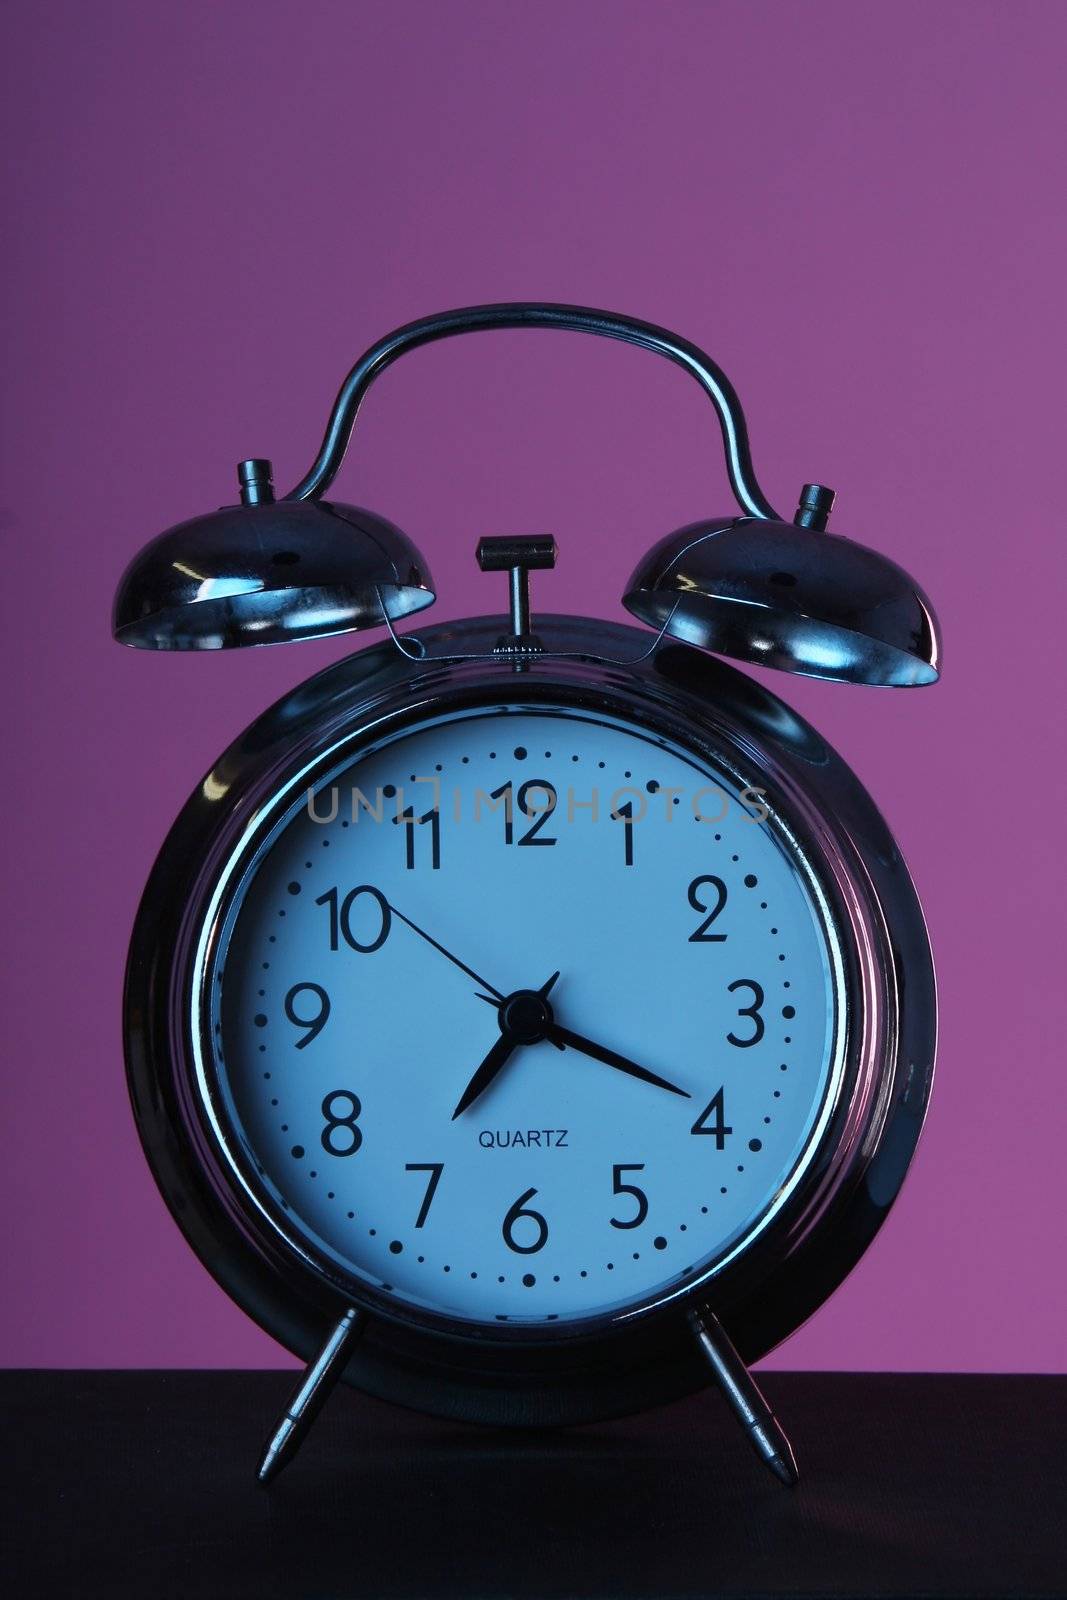 Alarm Clock by fouroaks